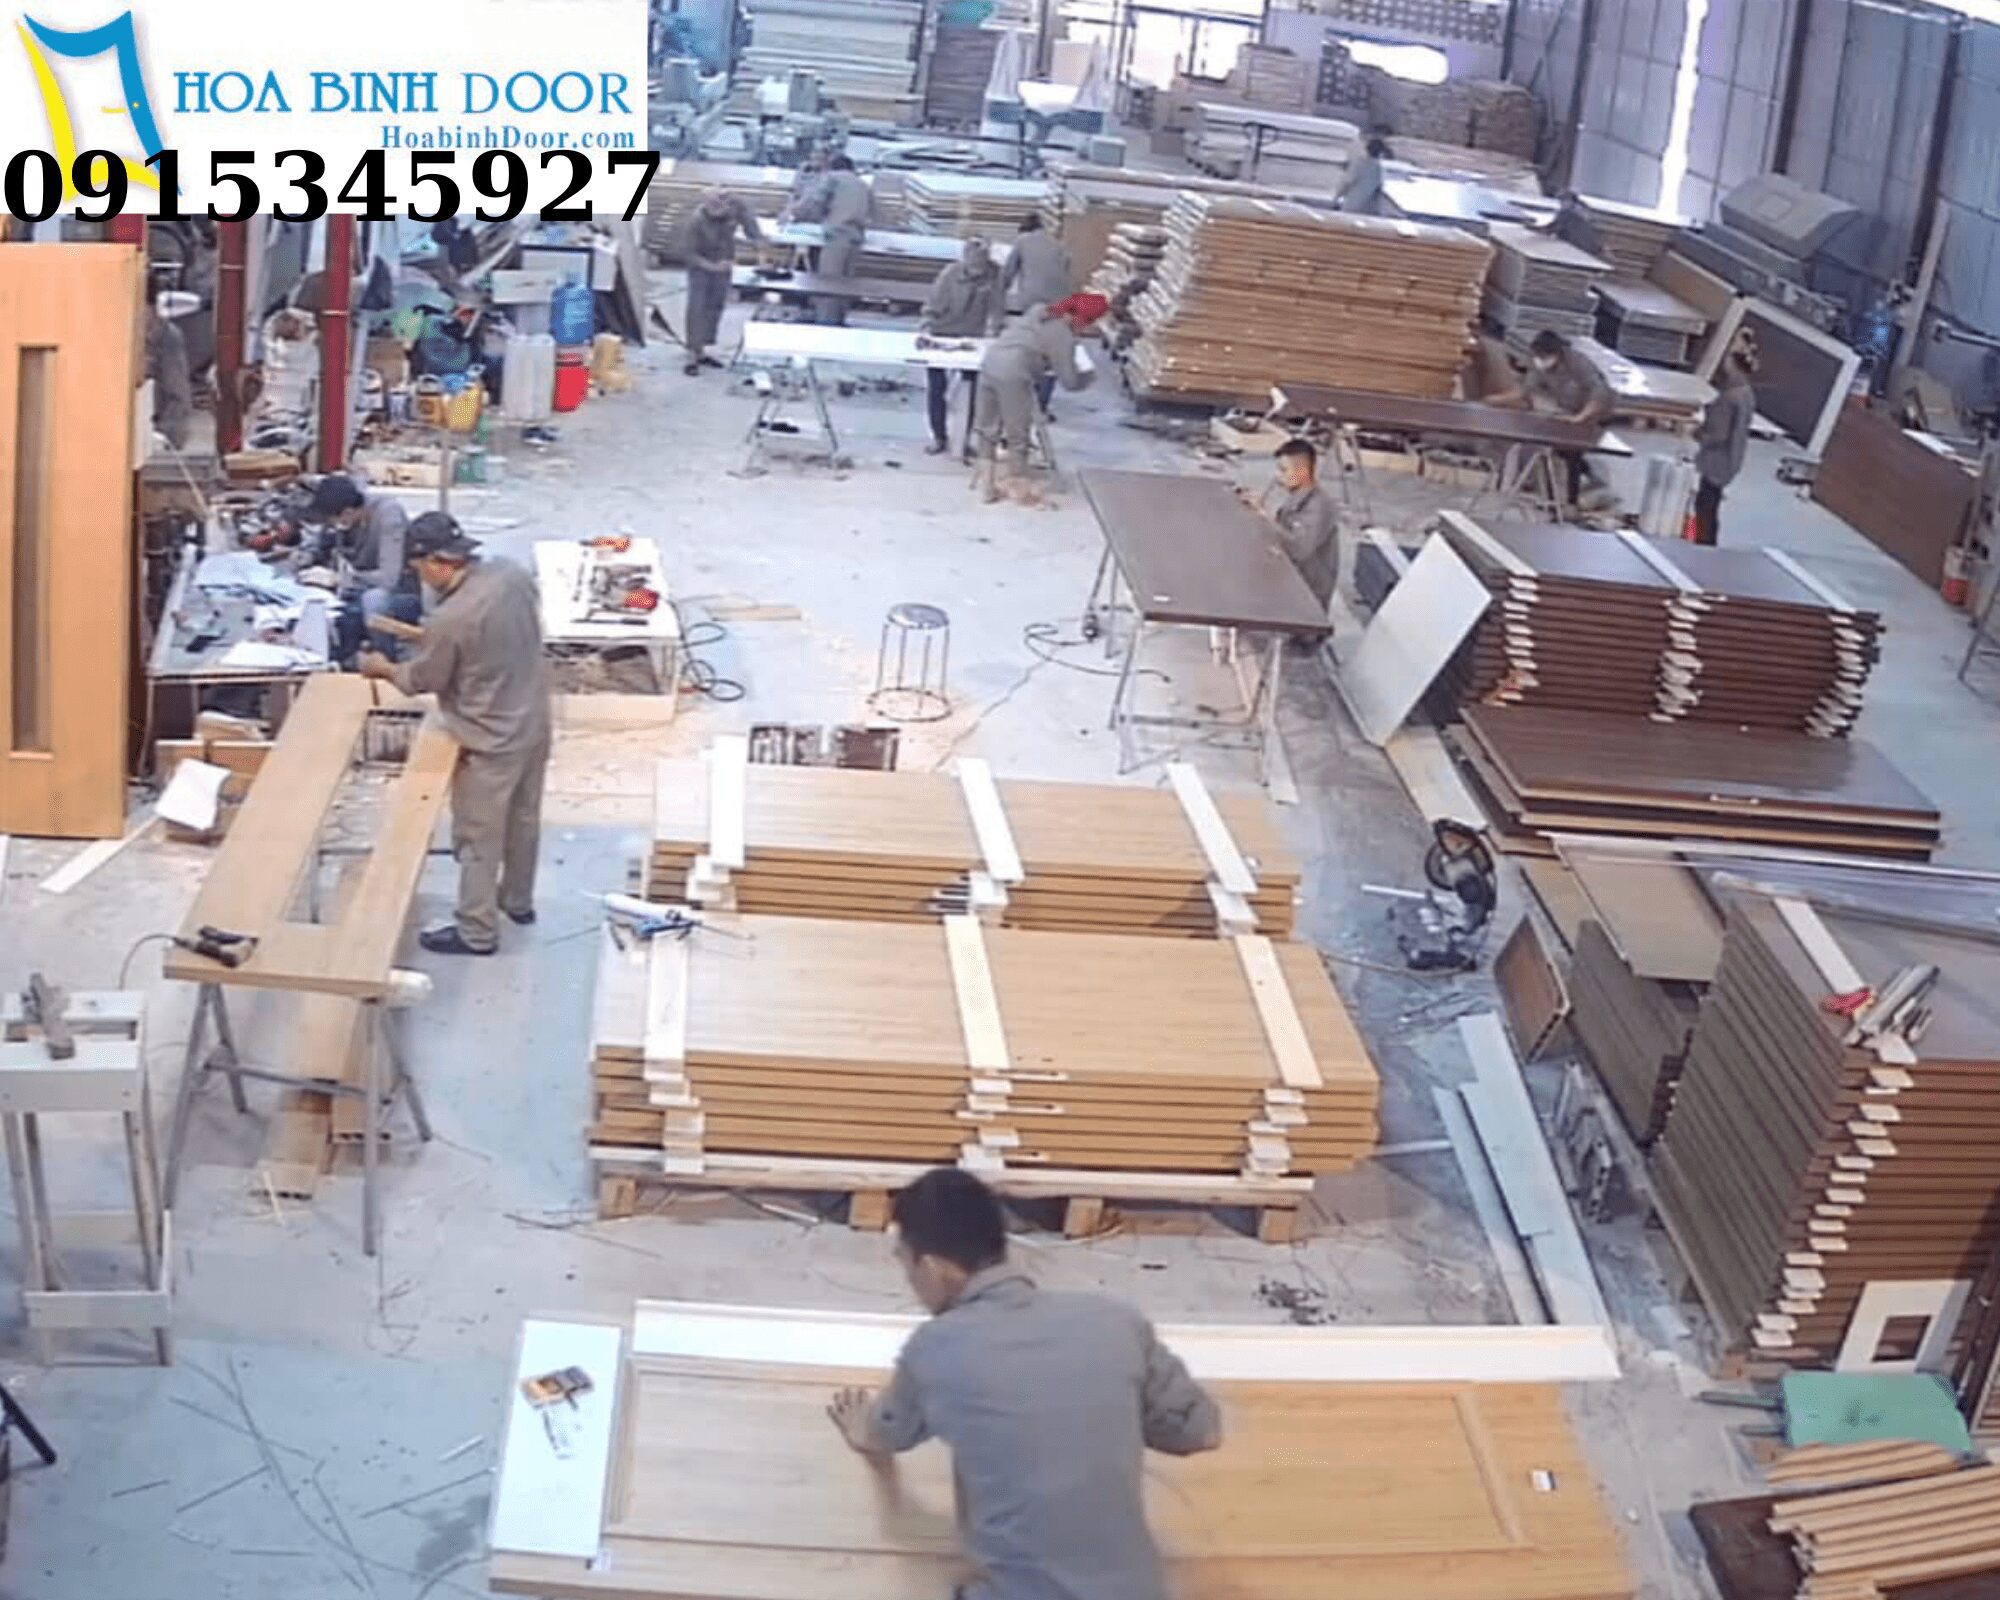 Cửa nhựa gỗ Đài Loan giá rẻ   Tại xưởng Gia công